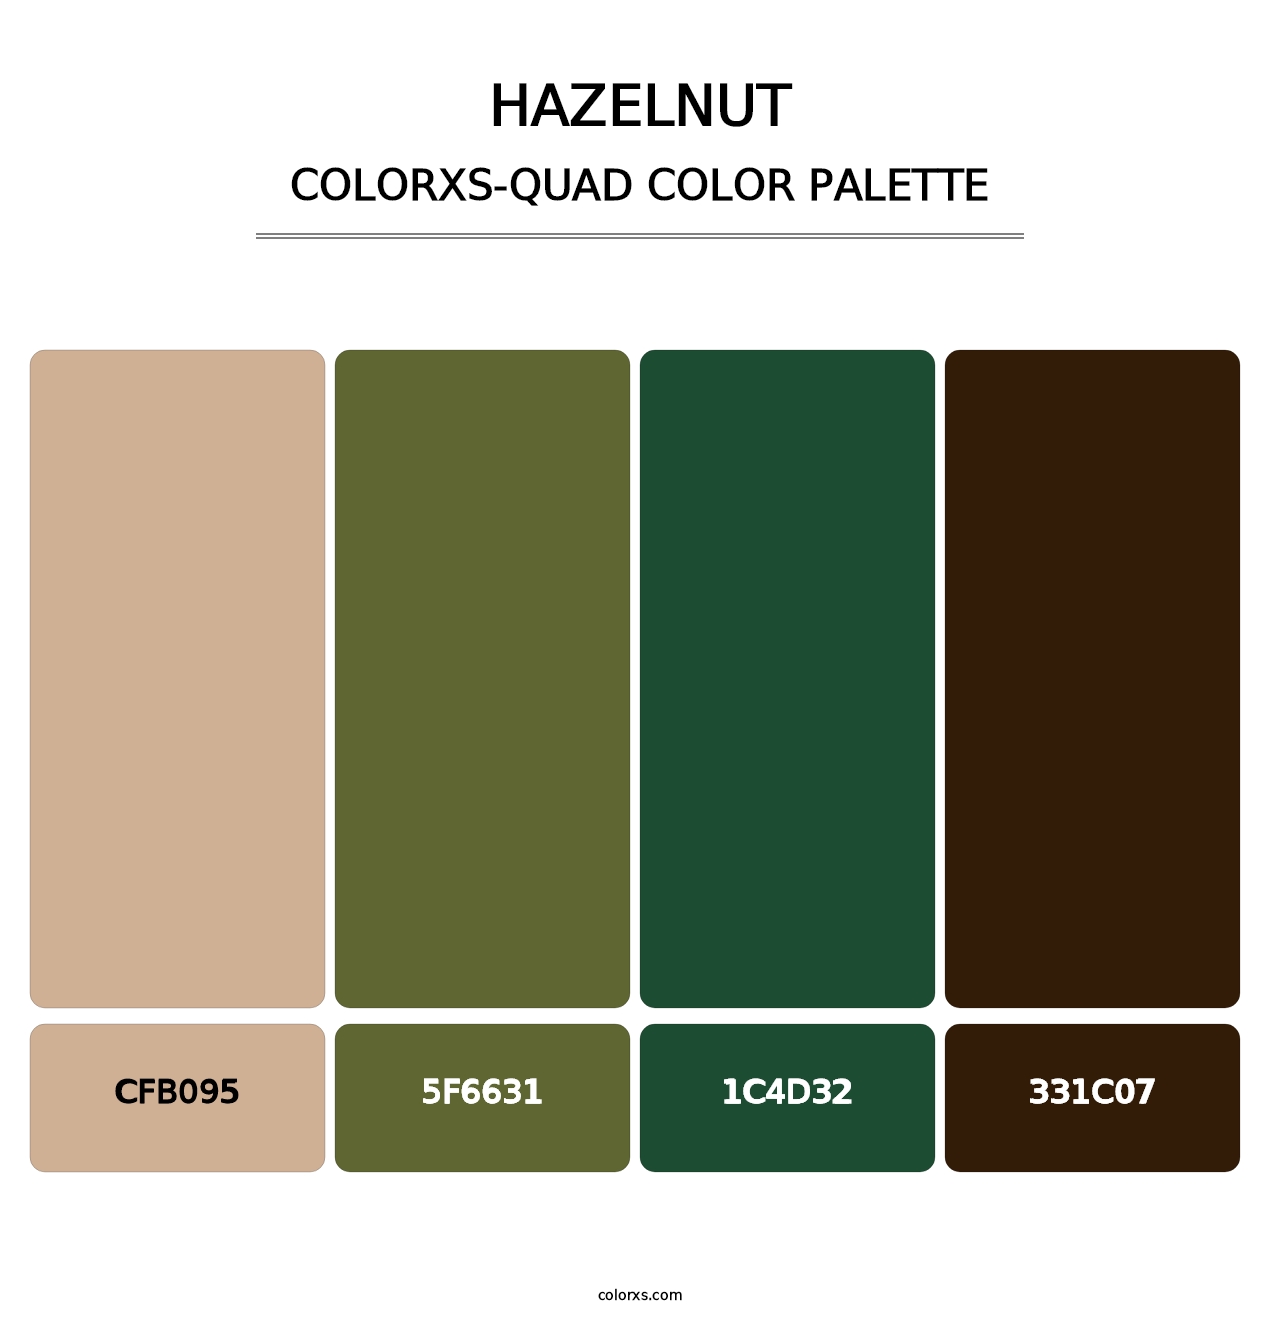 Hazelnut - Colorxs Quad Palette